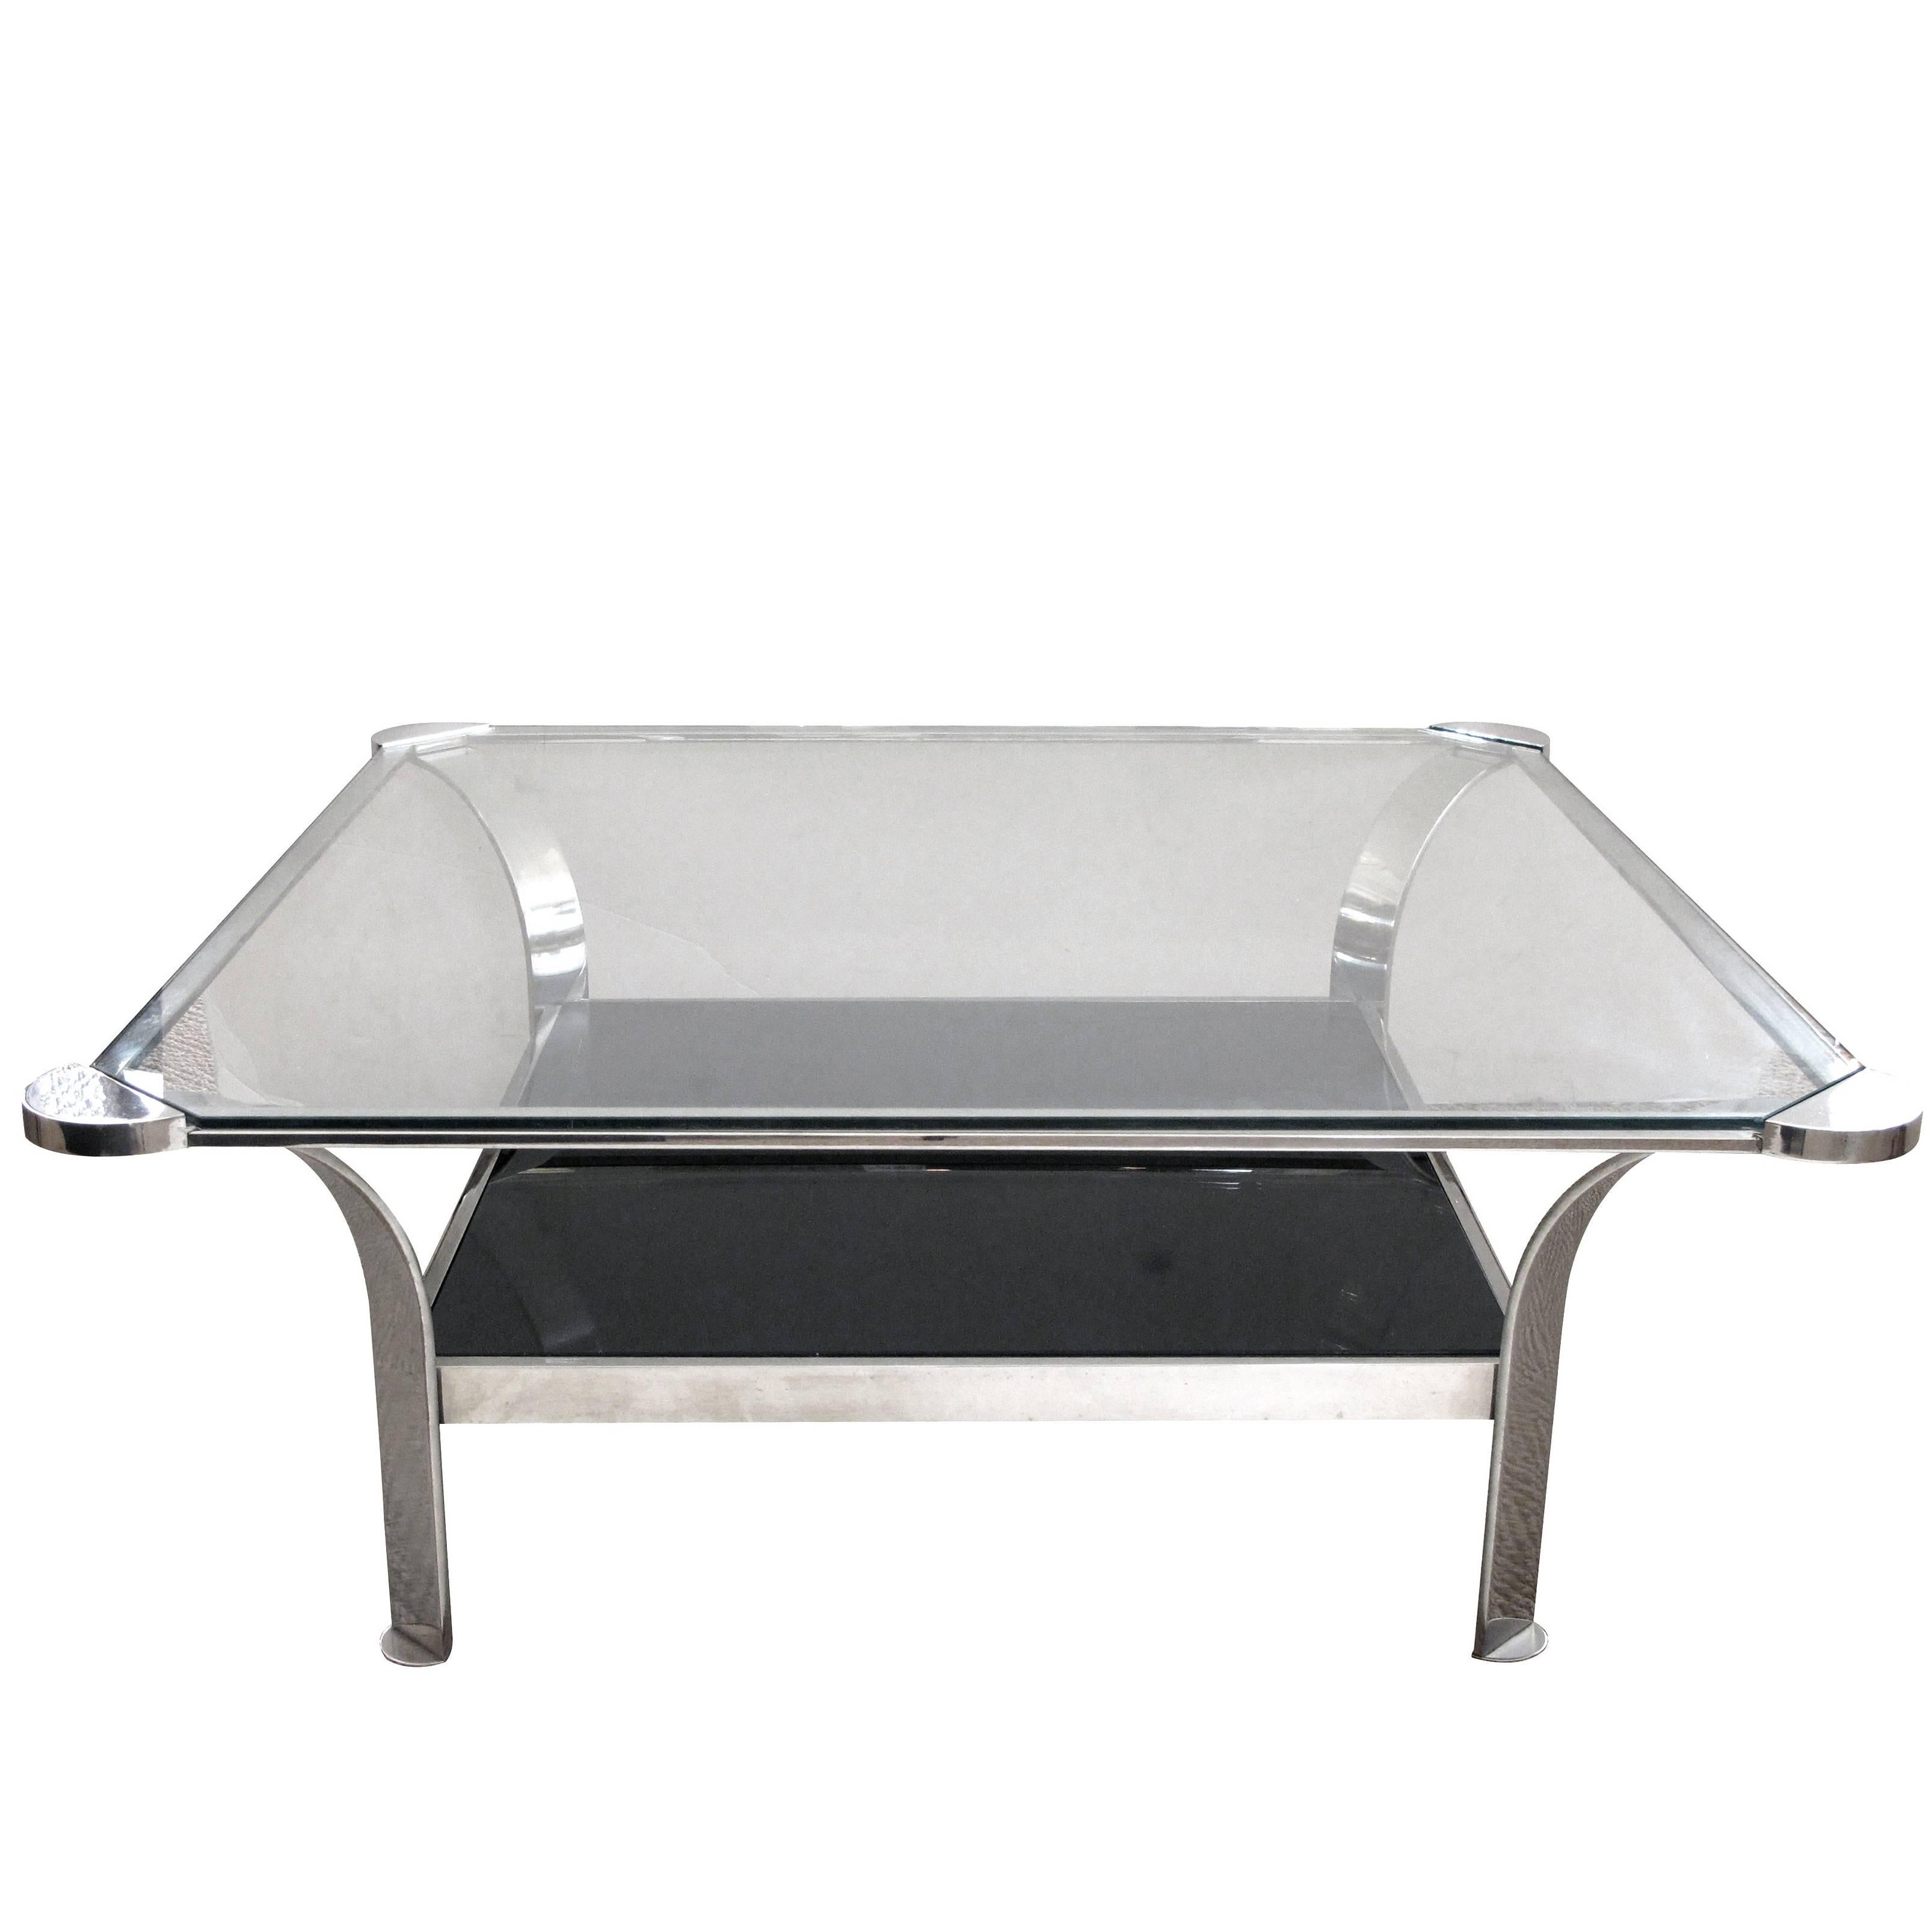 Grande table basse française en acier avec plateau en verre transparent et étagère inférieure en verre noir en vente